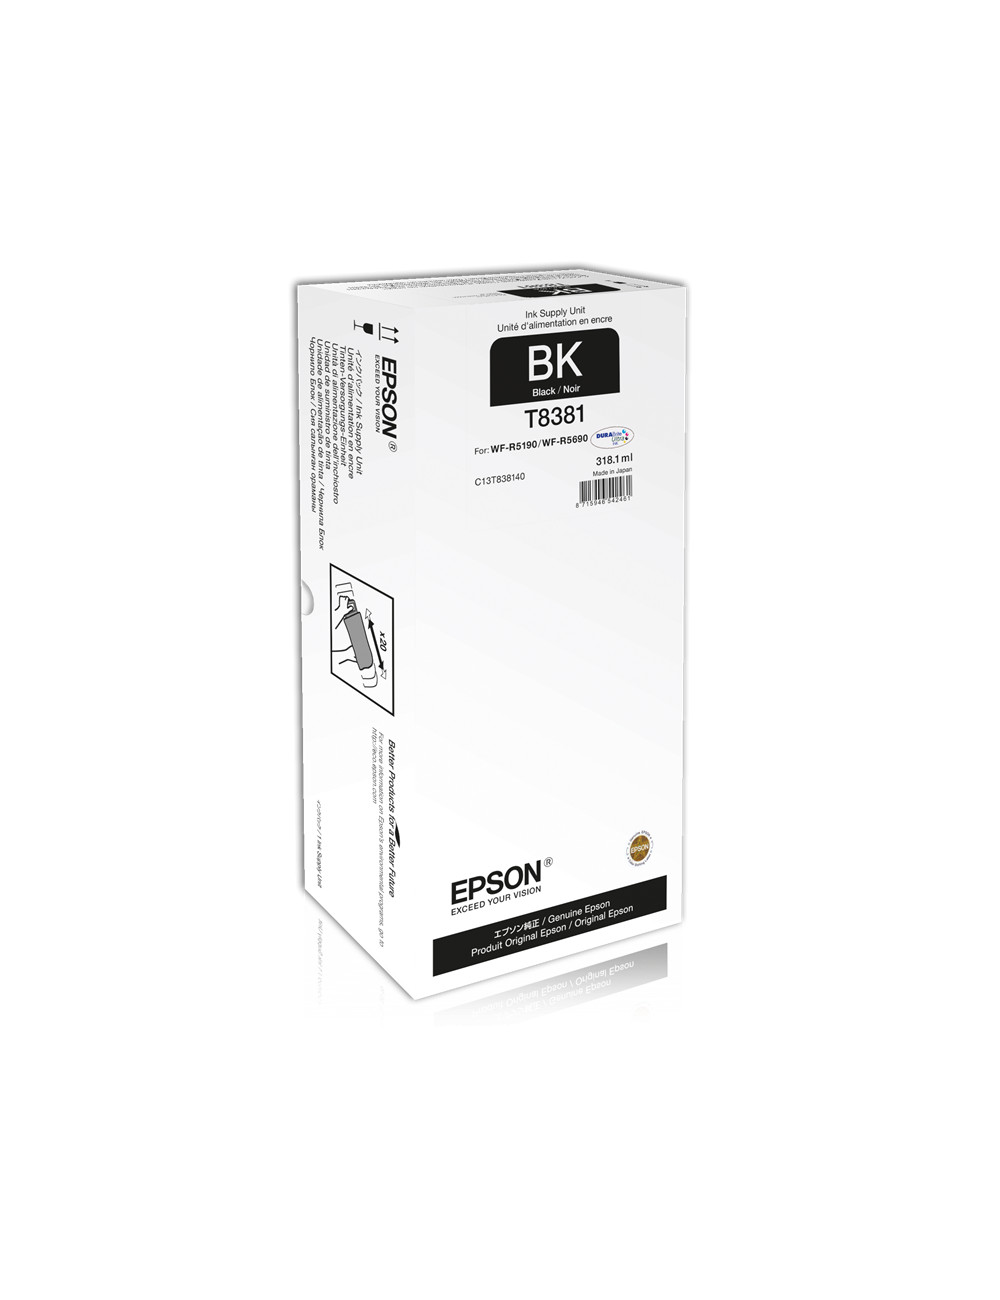 Epson XL Ink Supply Unit WorkForce Pro WF-R5xxx series Black